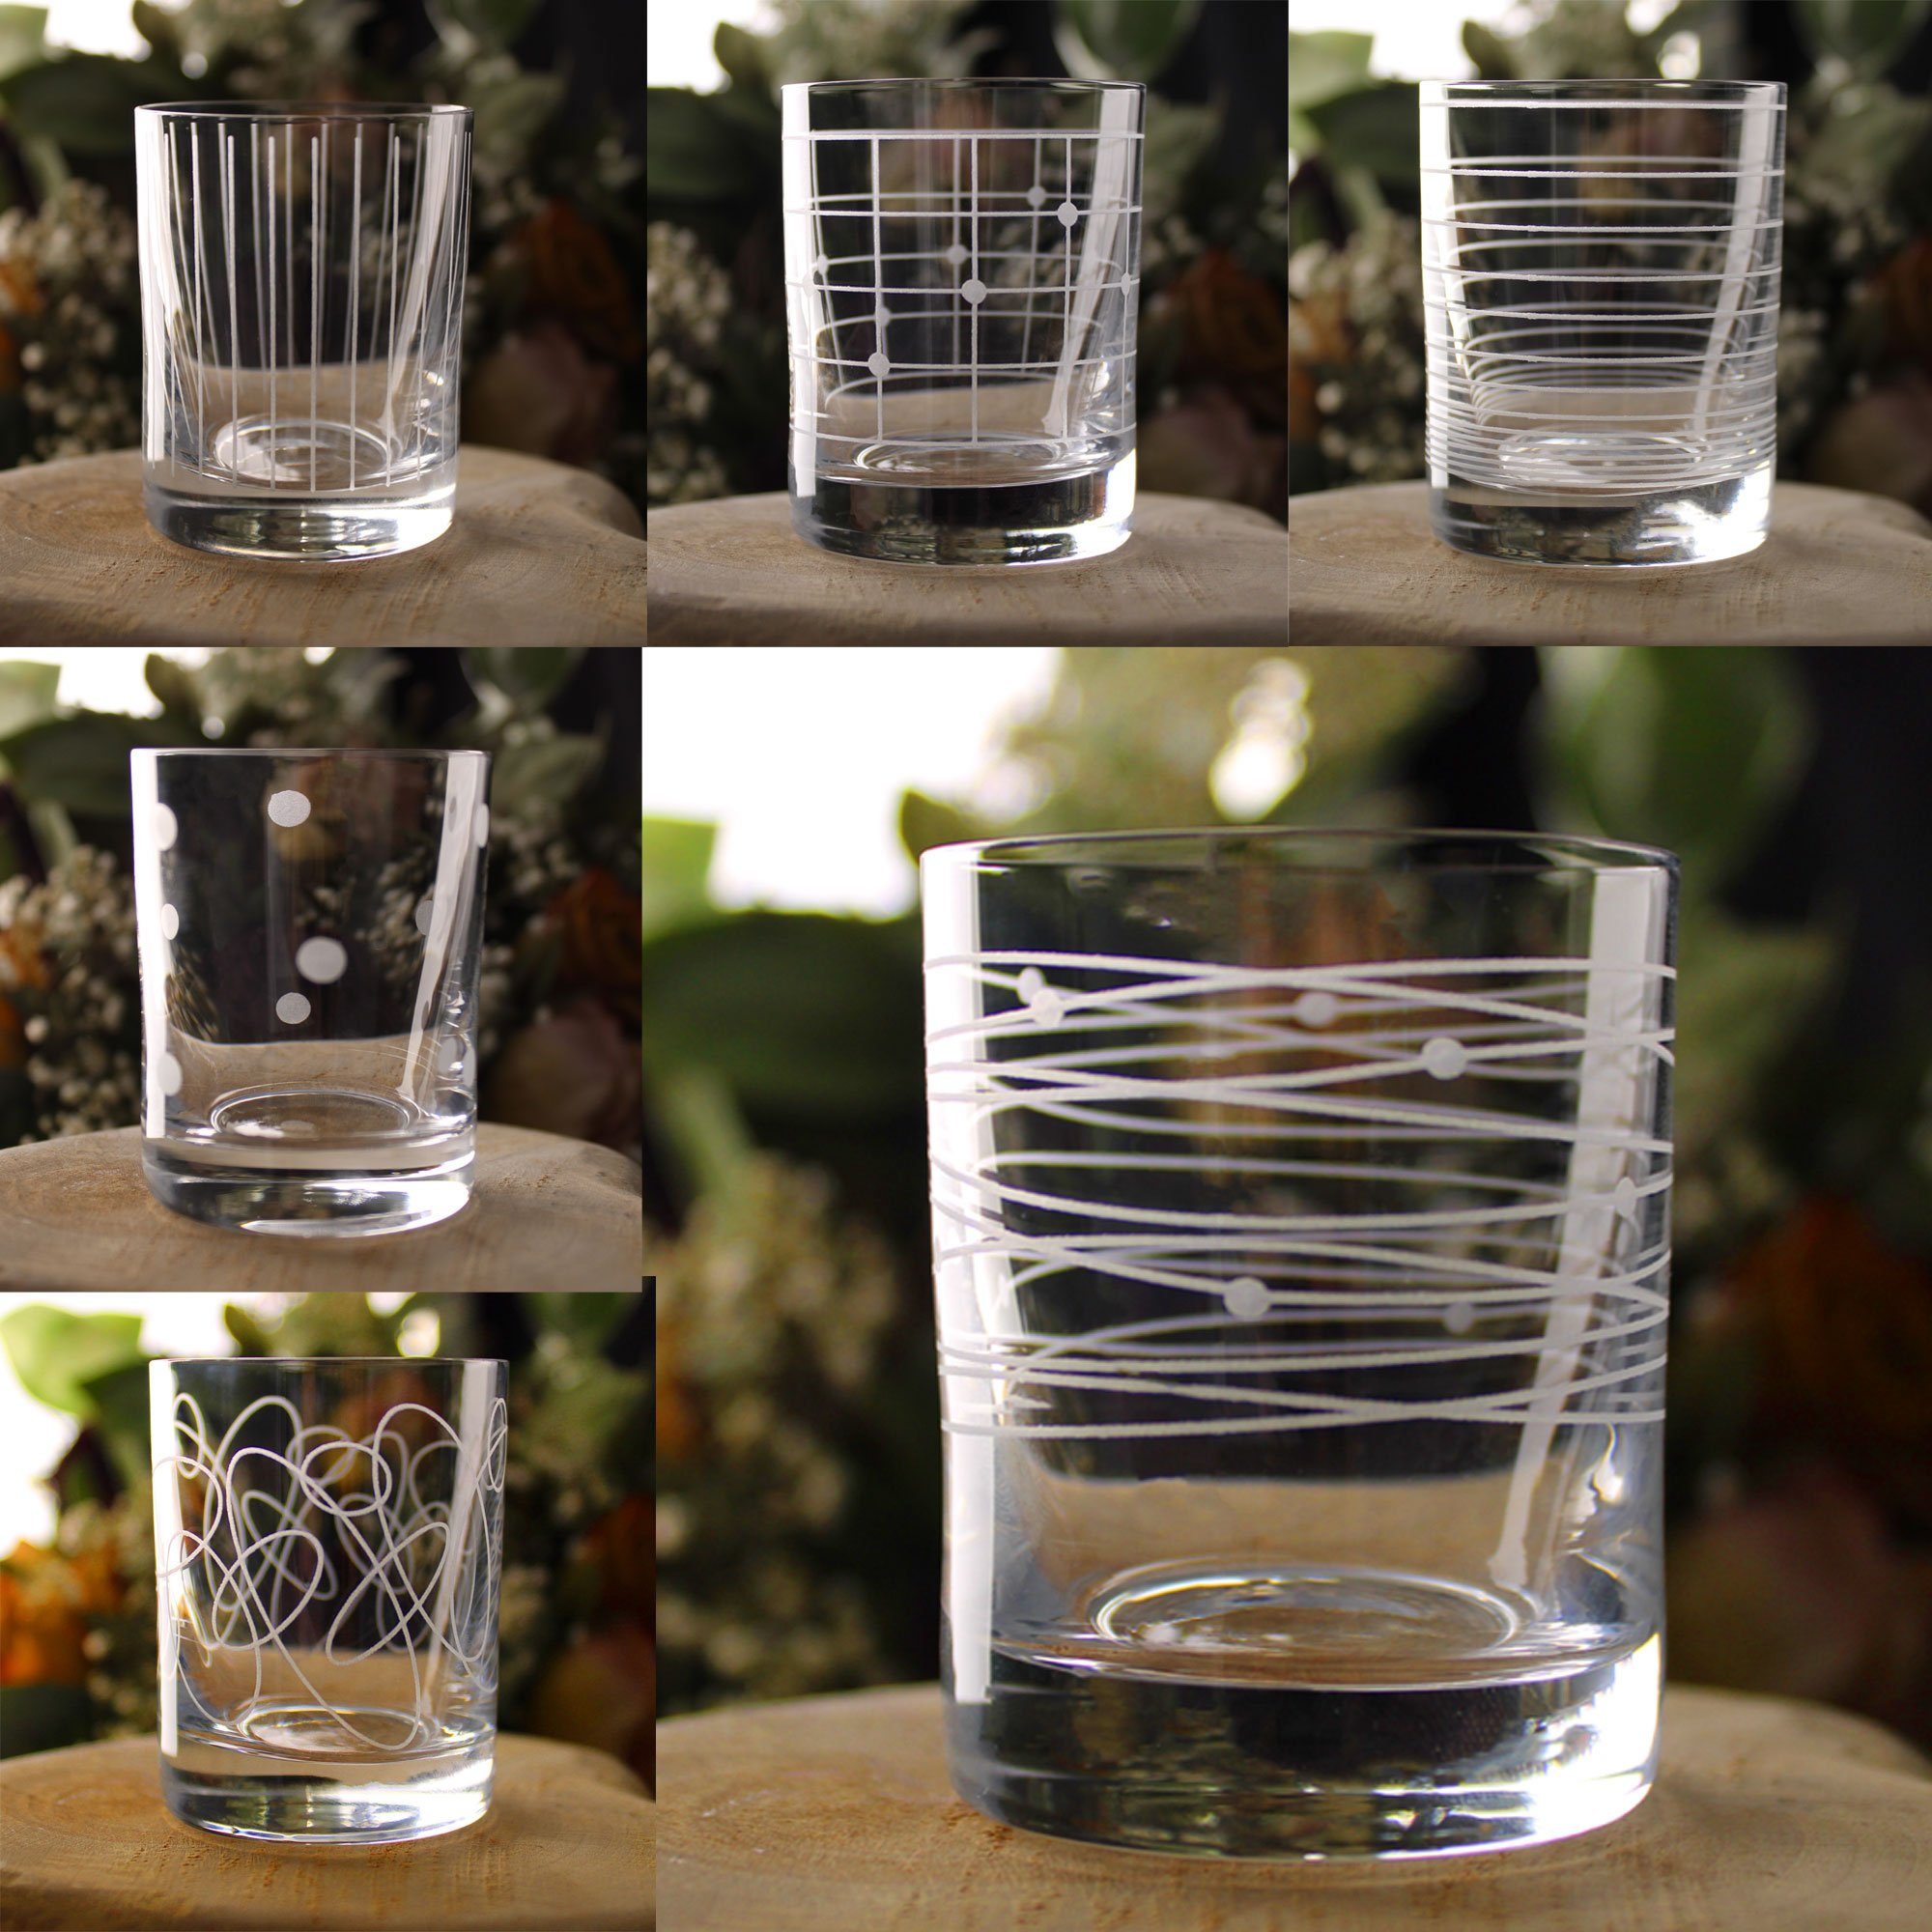 Bohemia Crystal Schnapsglas Barline, Kristallglas, veredelt mit Gravur,  6-teilig, Inhalt 60 ml, Schnapsglas-Set, 6 verschiedene gravierte Motive